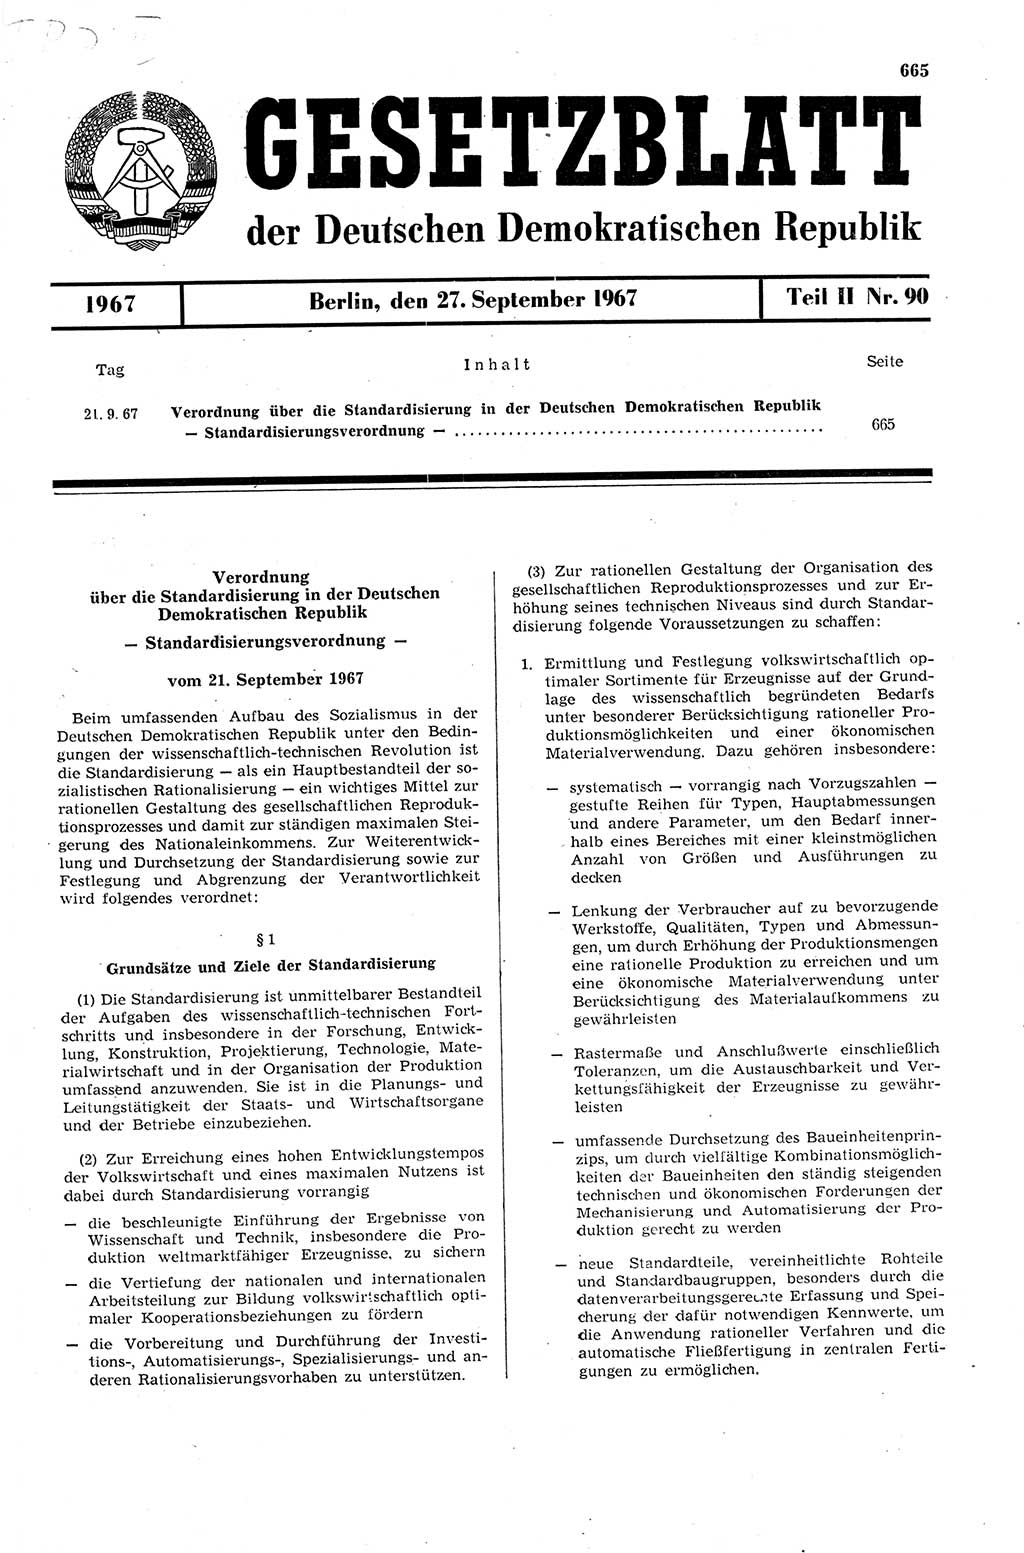 Gesetzblatt (GBl.) der Deutschen Demokratischen Republik (DDR) Teil ⅠⅠ 1967, Seite 665 (GBl. DDR ⅠⅠ 1967, S. 665)